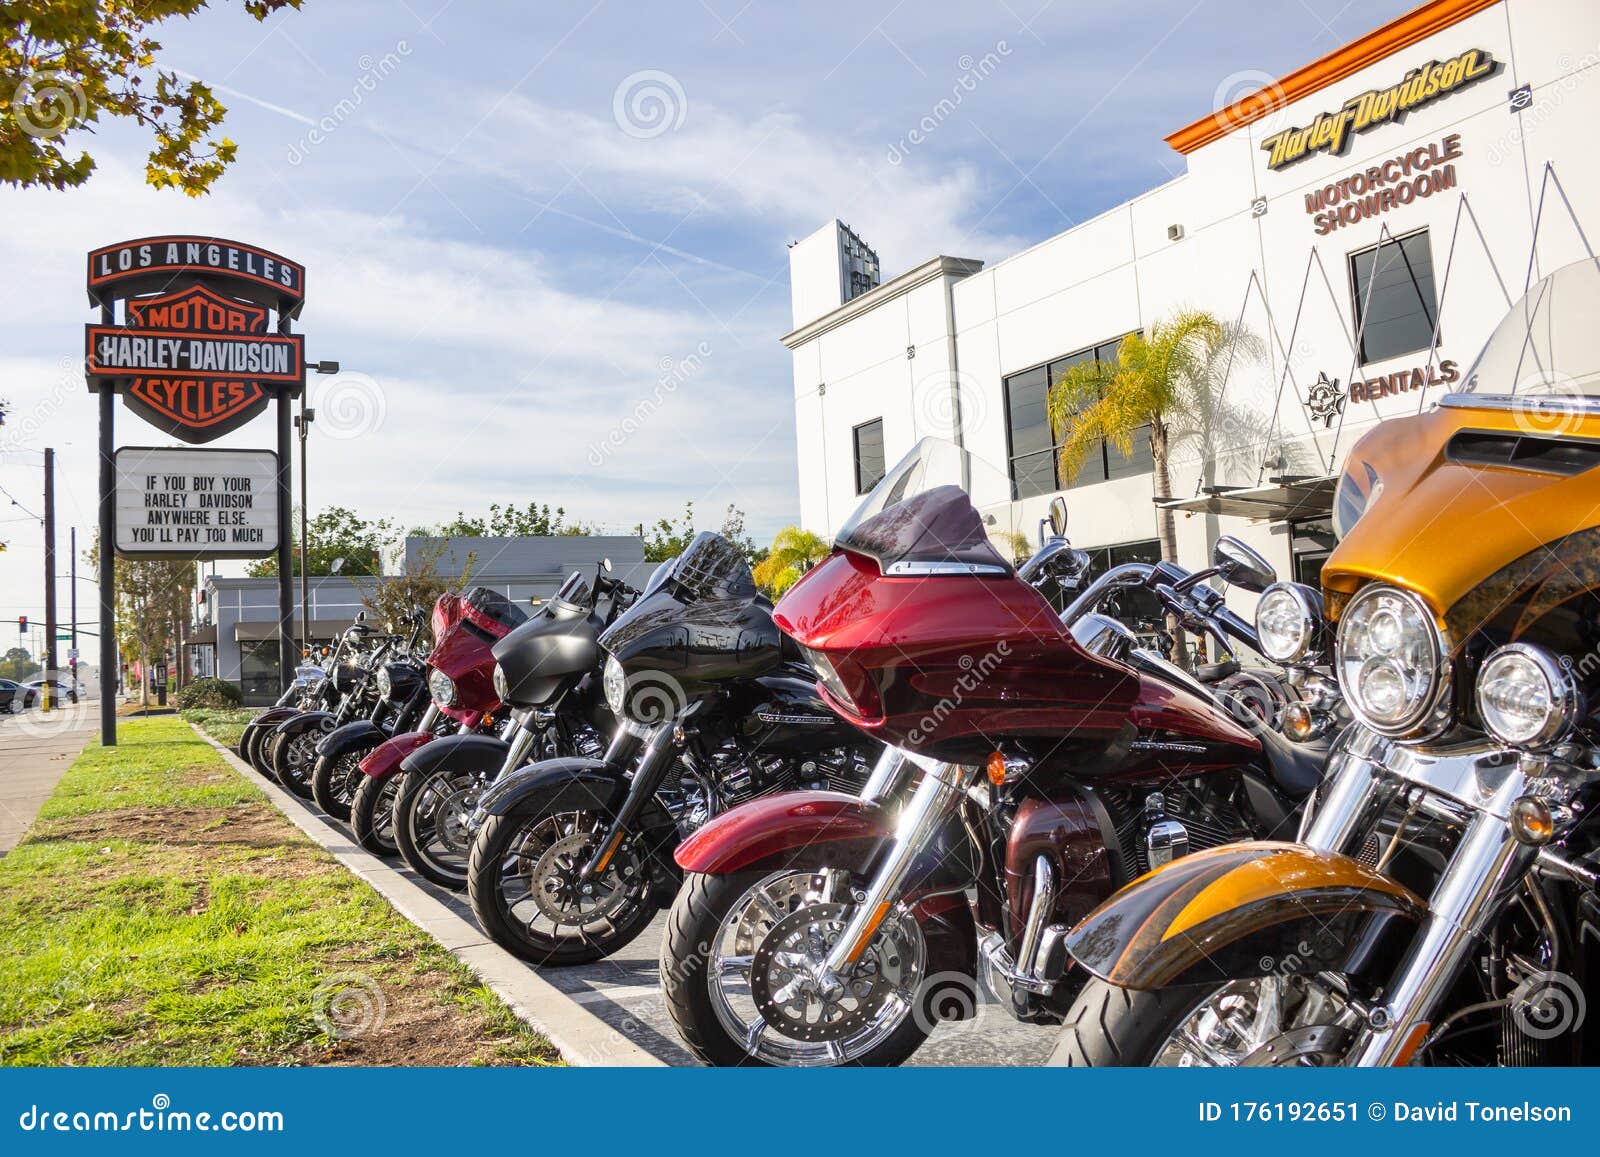 Harley Davidson Motorcycle Dealer Near Me Promotion Off66